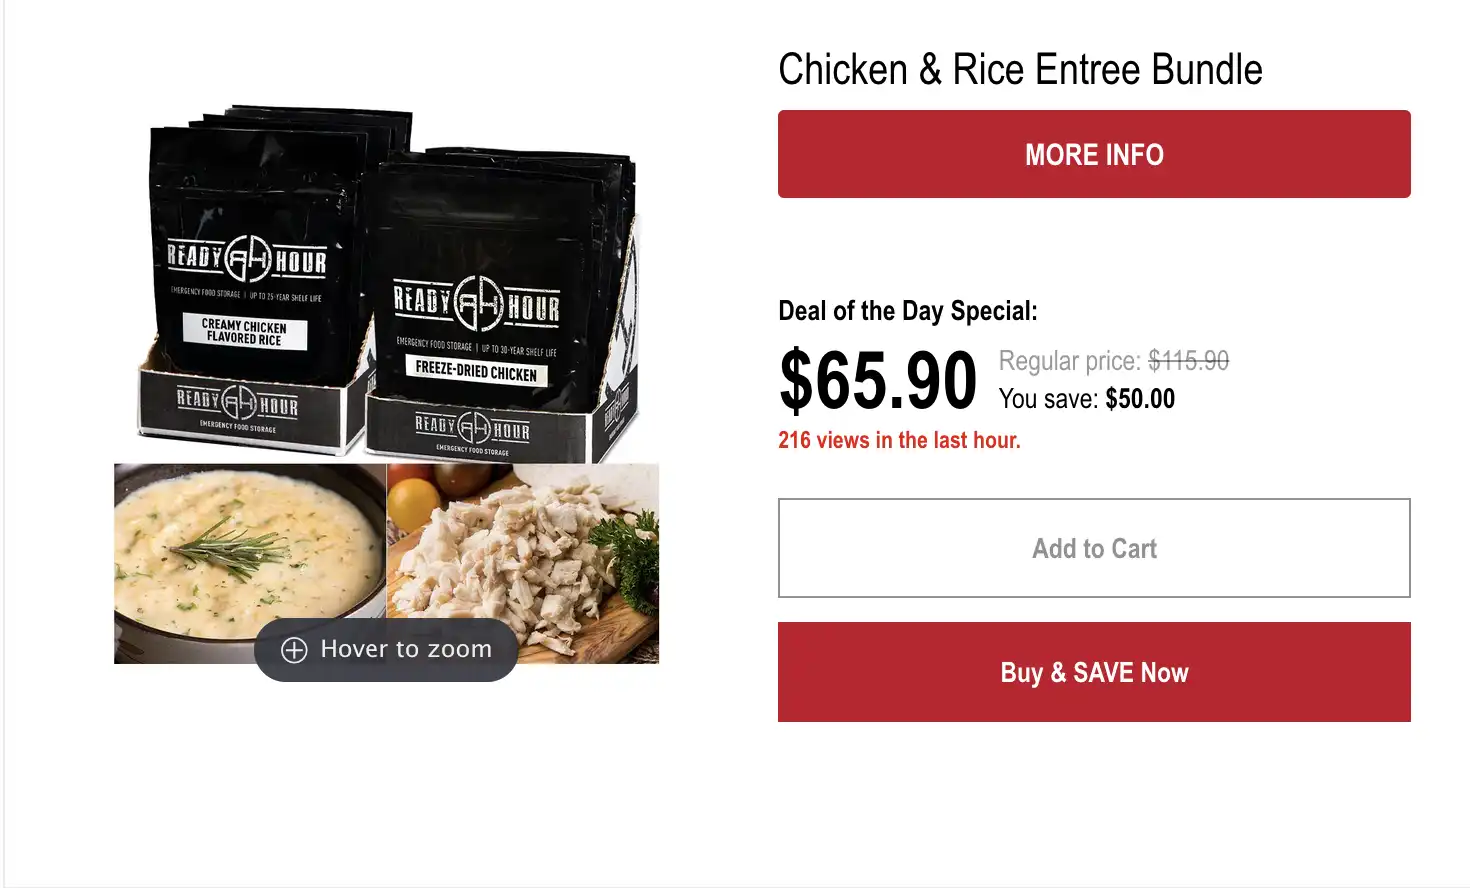 Chicken & Rice Entree Bundle - My Patriot Supply $65.90